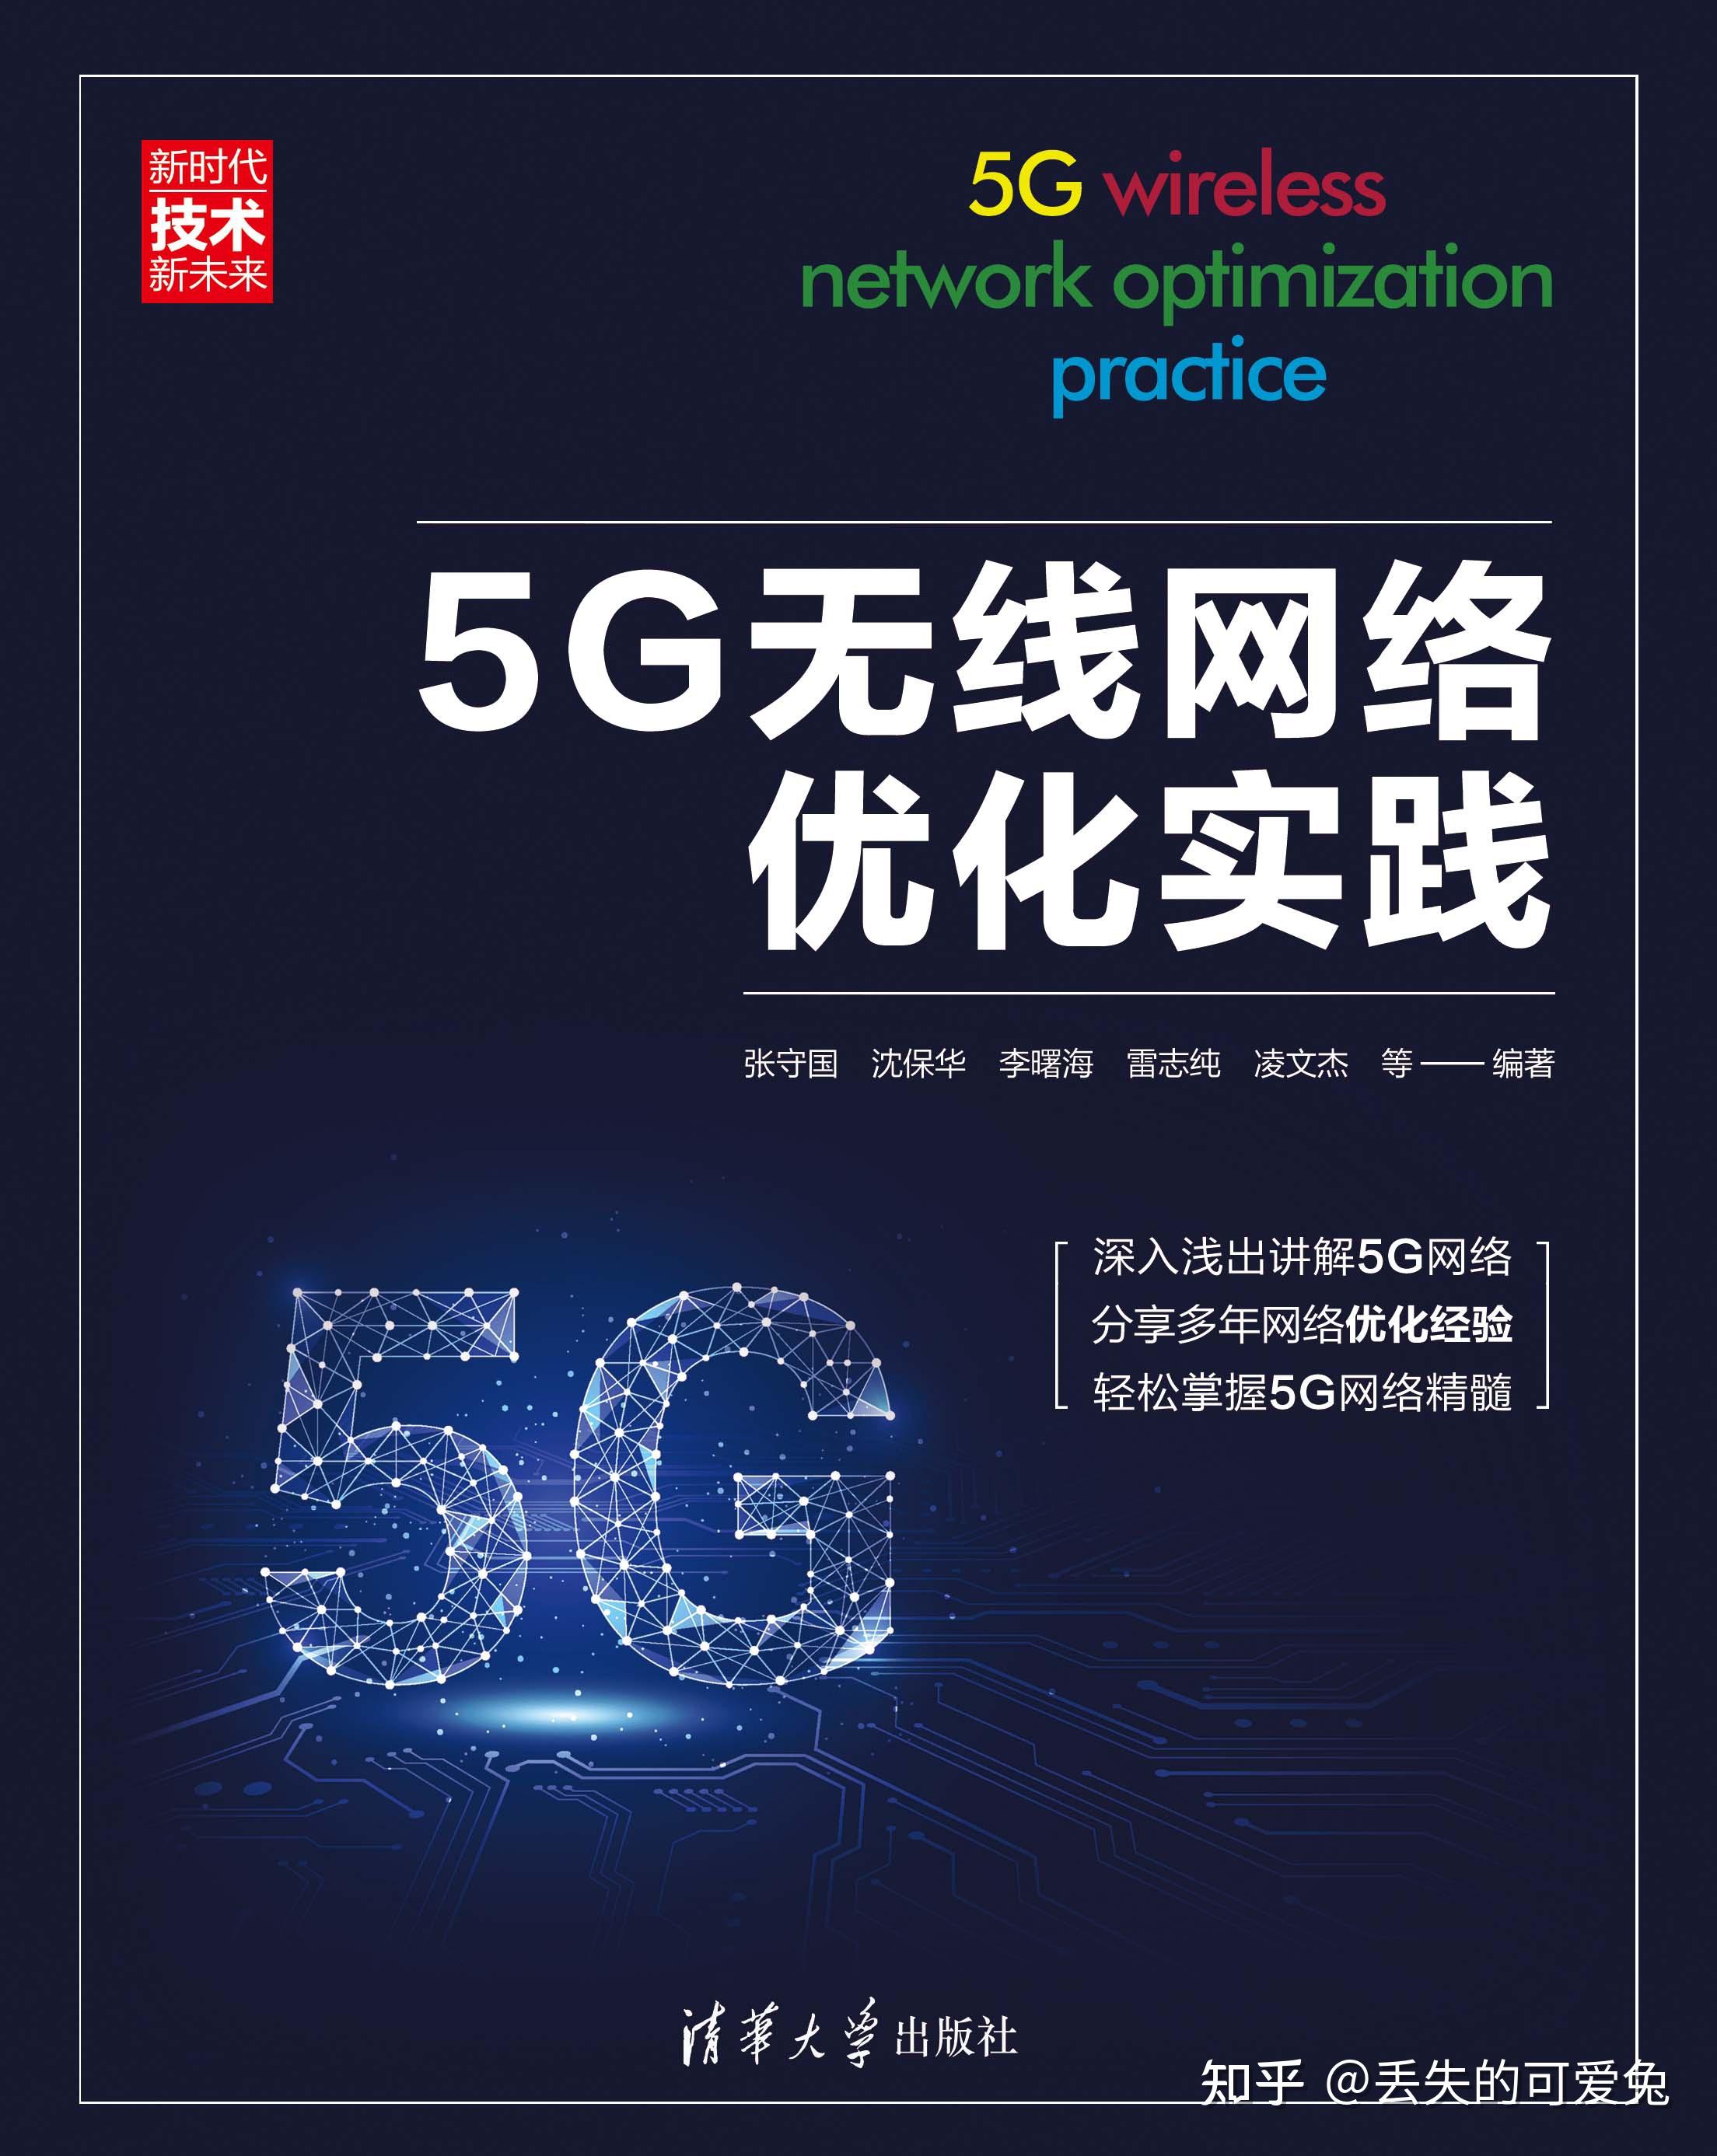 5G 网络全覆盖，改变生活方式，提升便捷度与效率